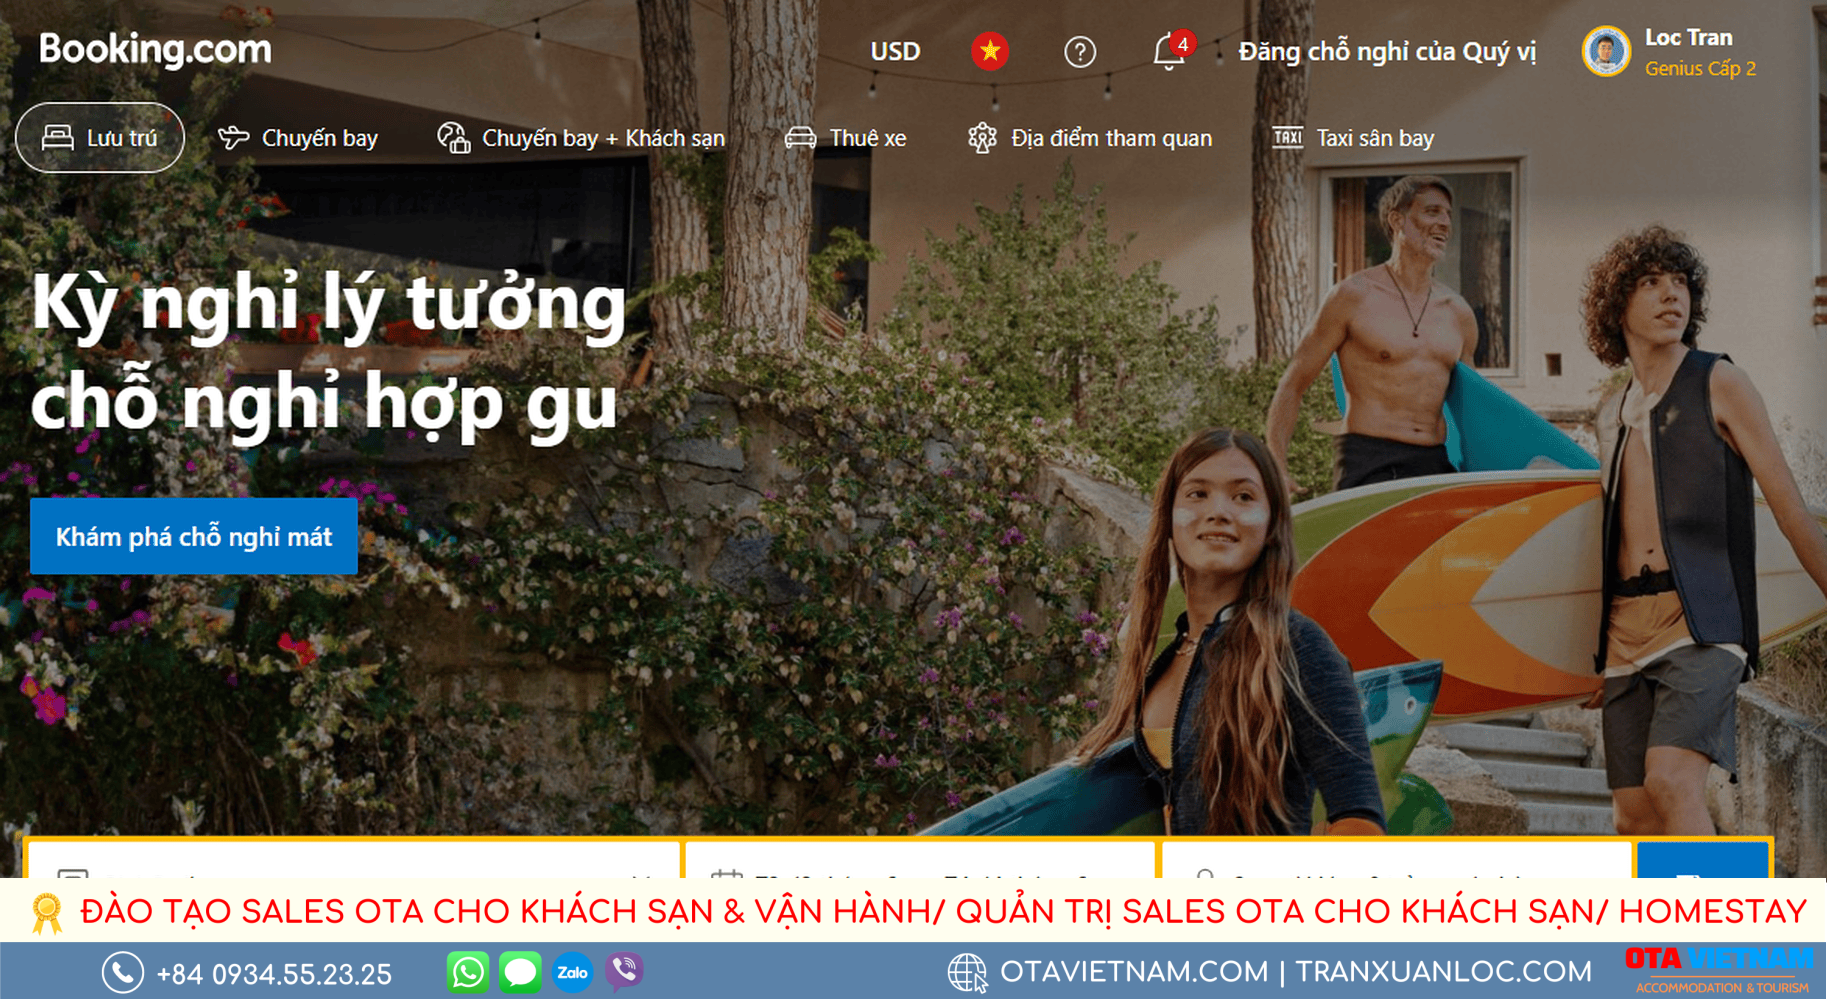 Co Che Va Huong Dan Dat Huy Phong Tren Booking Cho Khach Du Lich Ban Can Biet Giao Dien Web